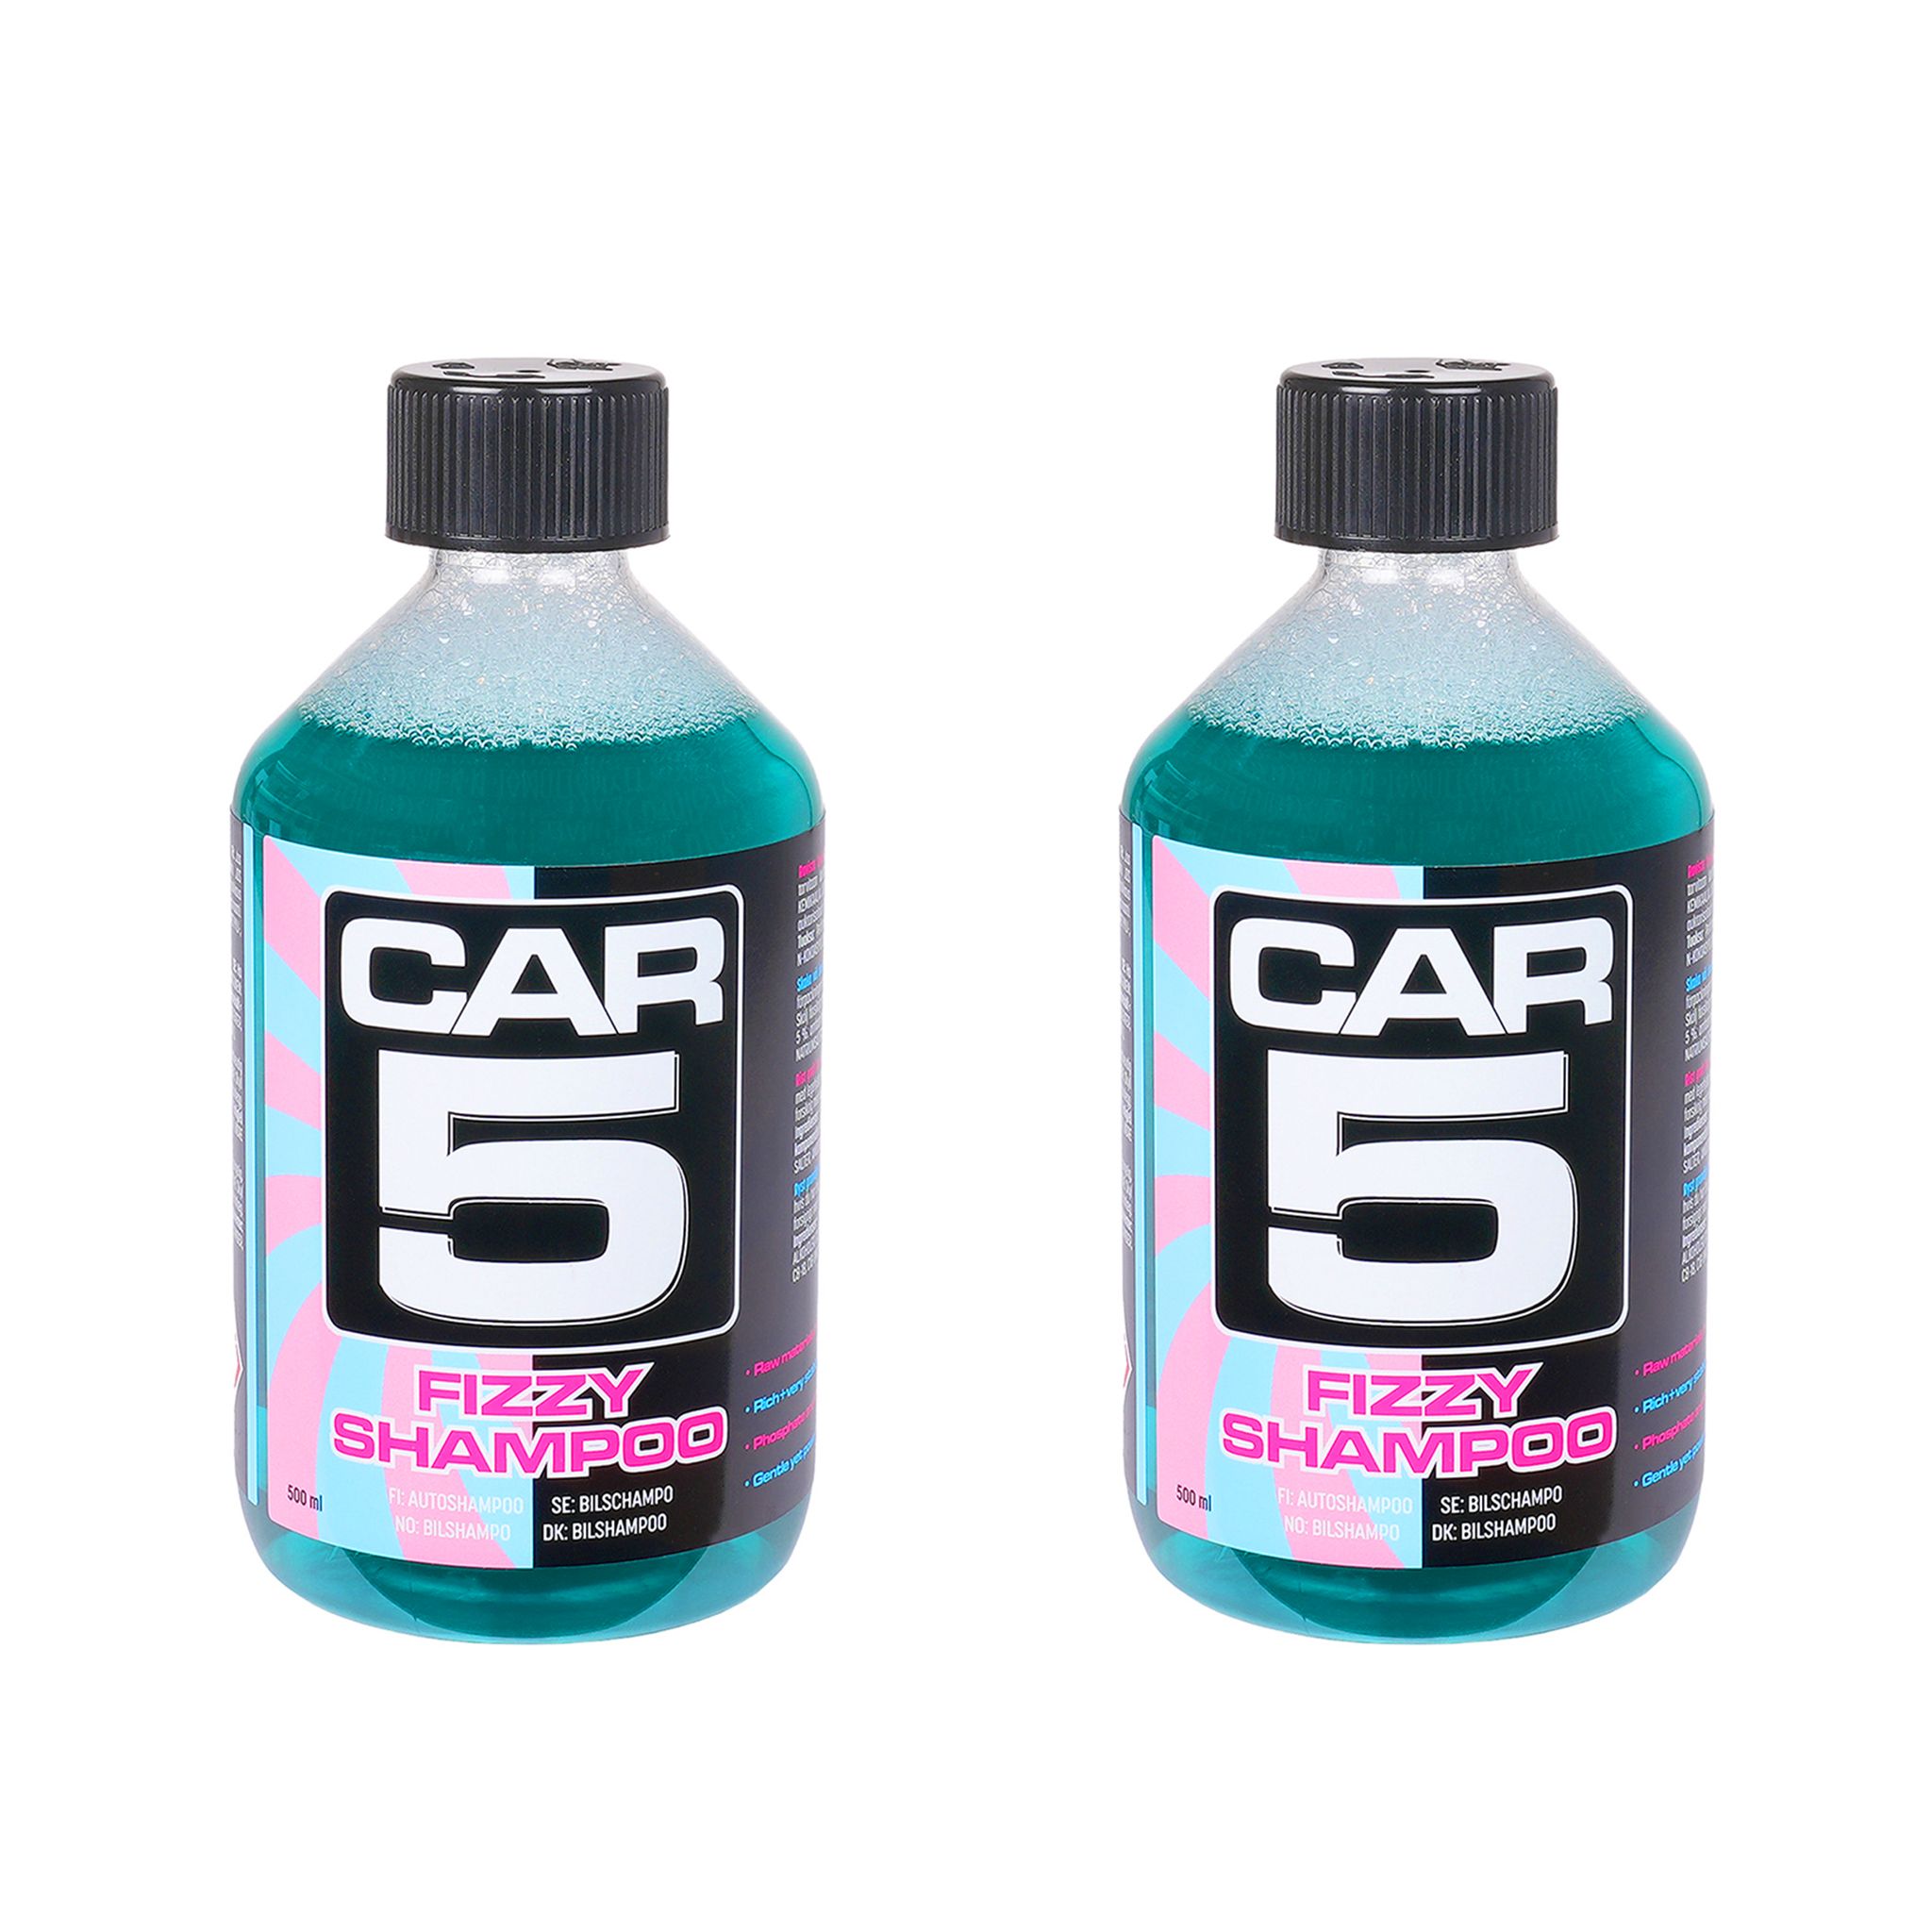 Bilshampo CAR5 Fizzy Shampoo, 2 x 500 ml